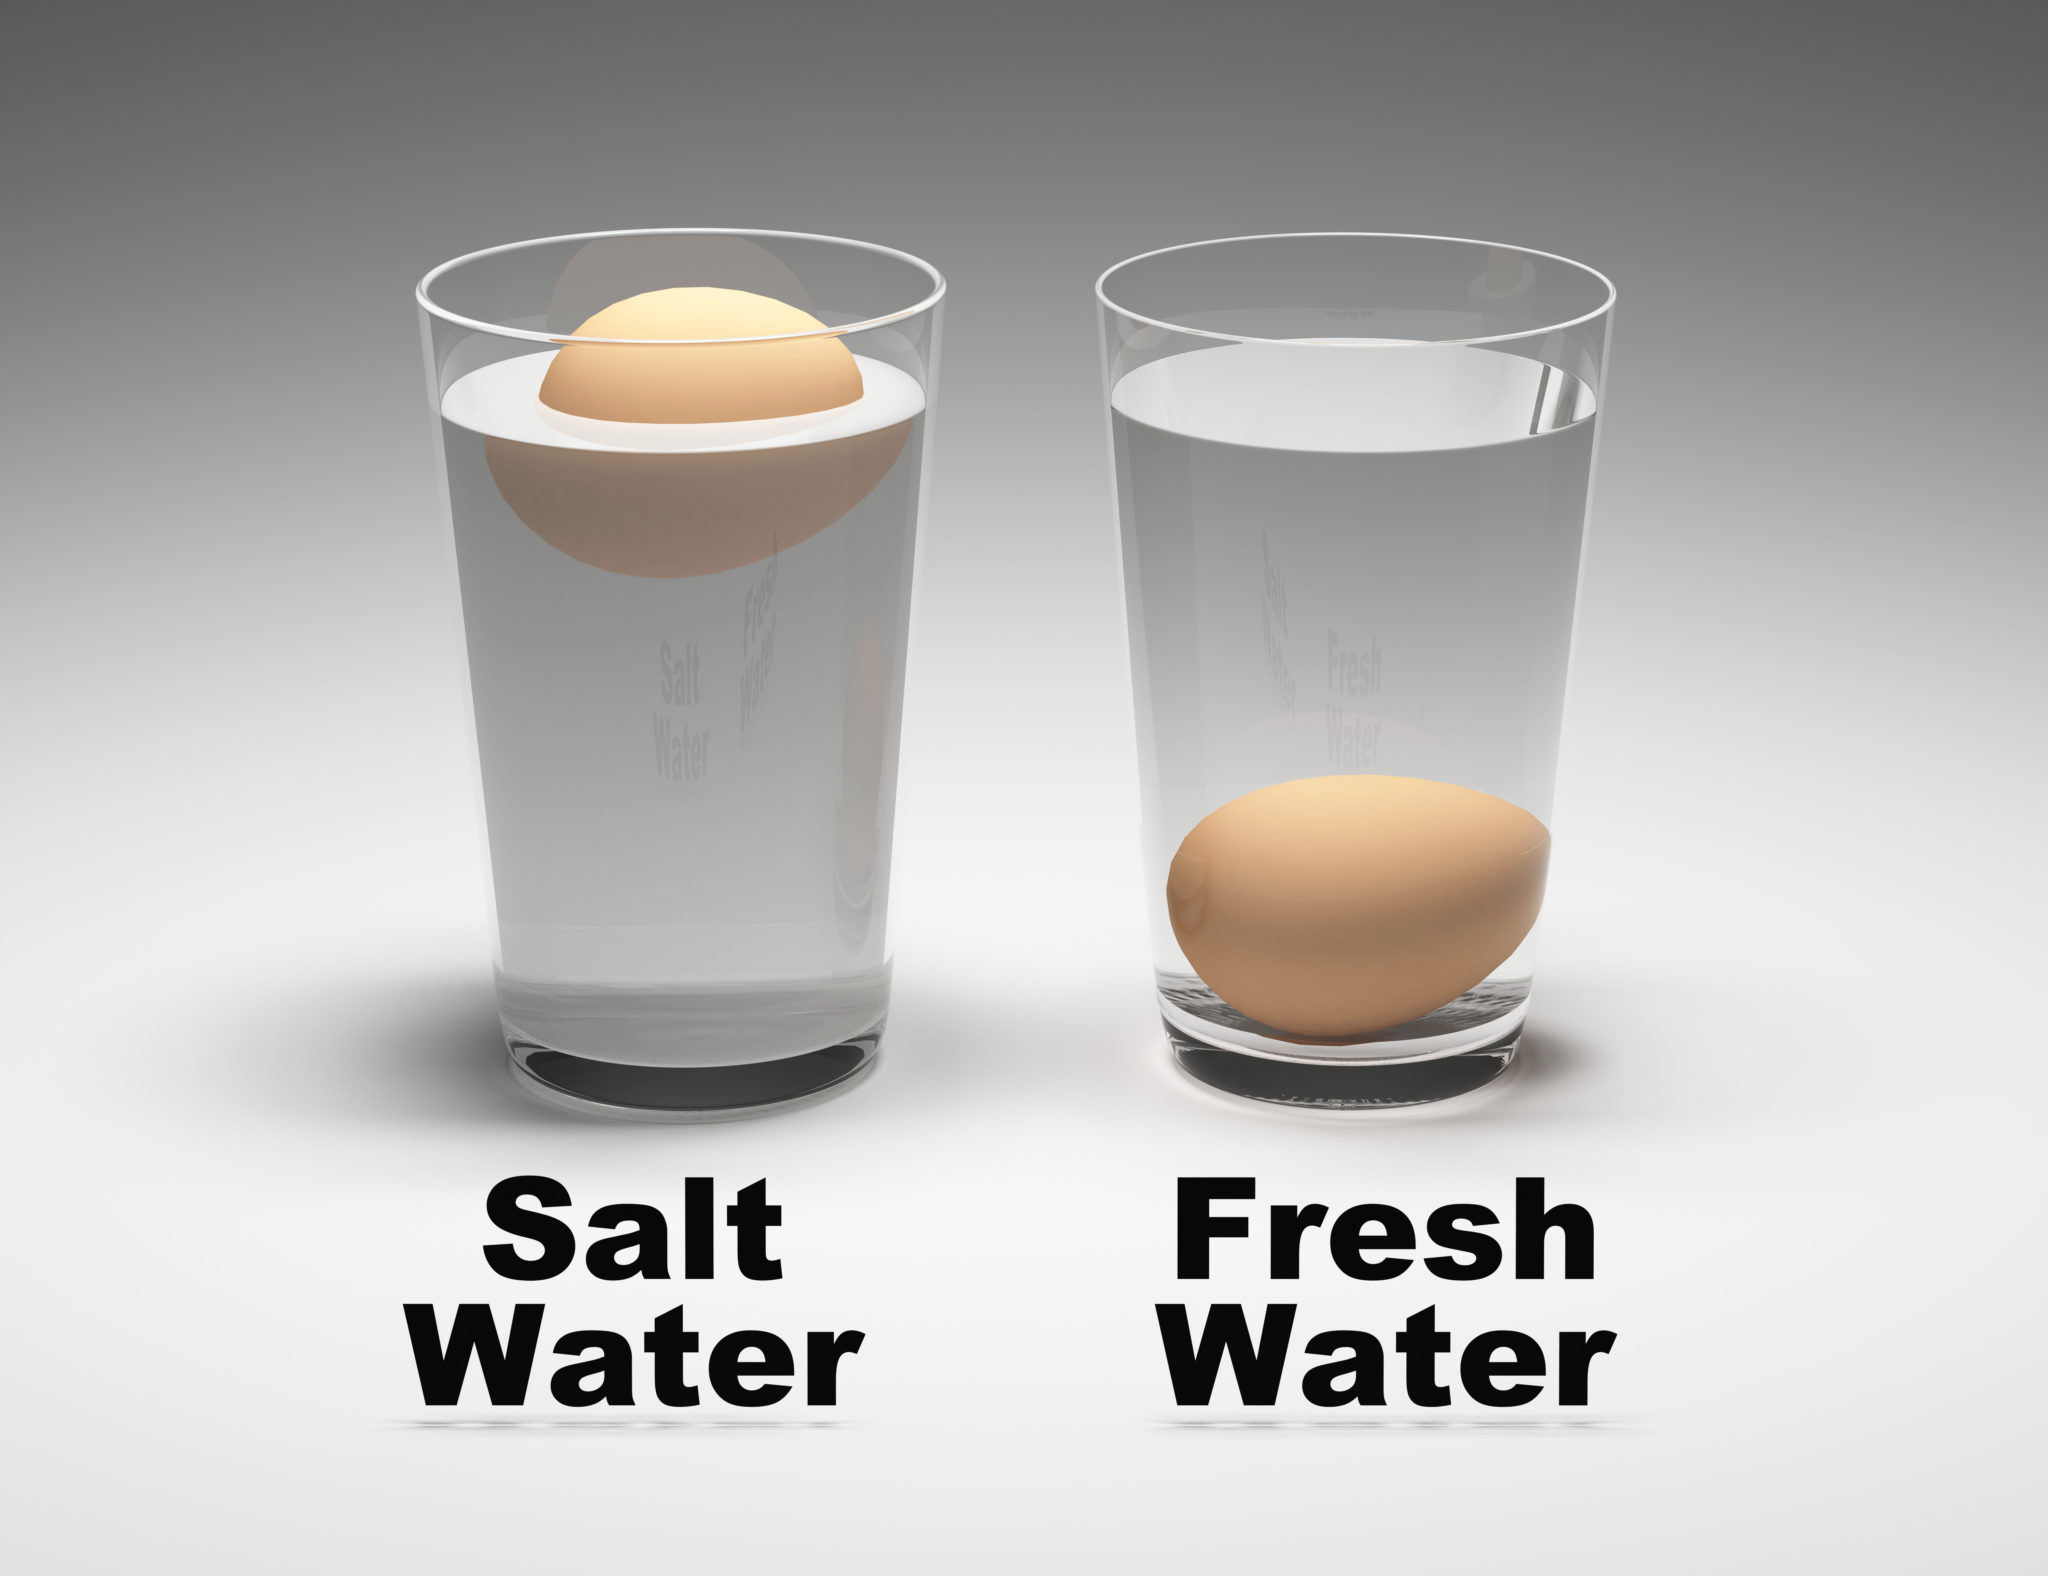 eggs float or sink